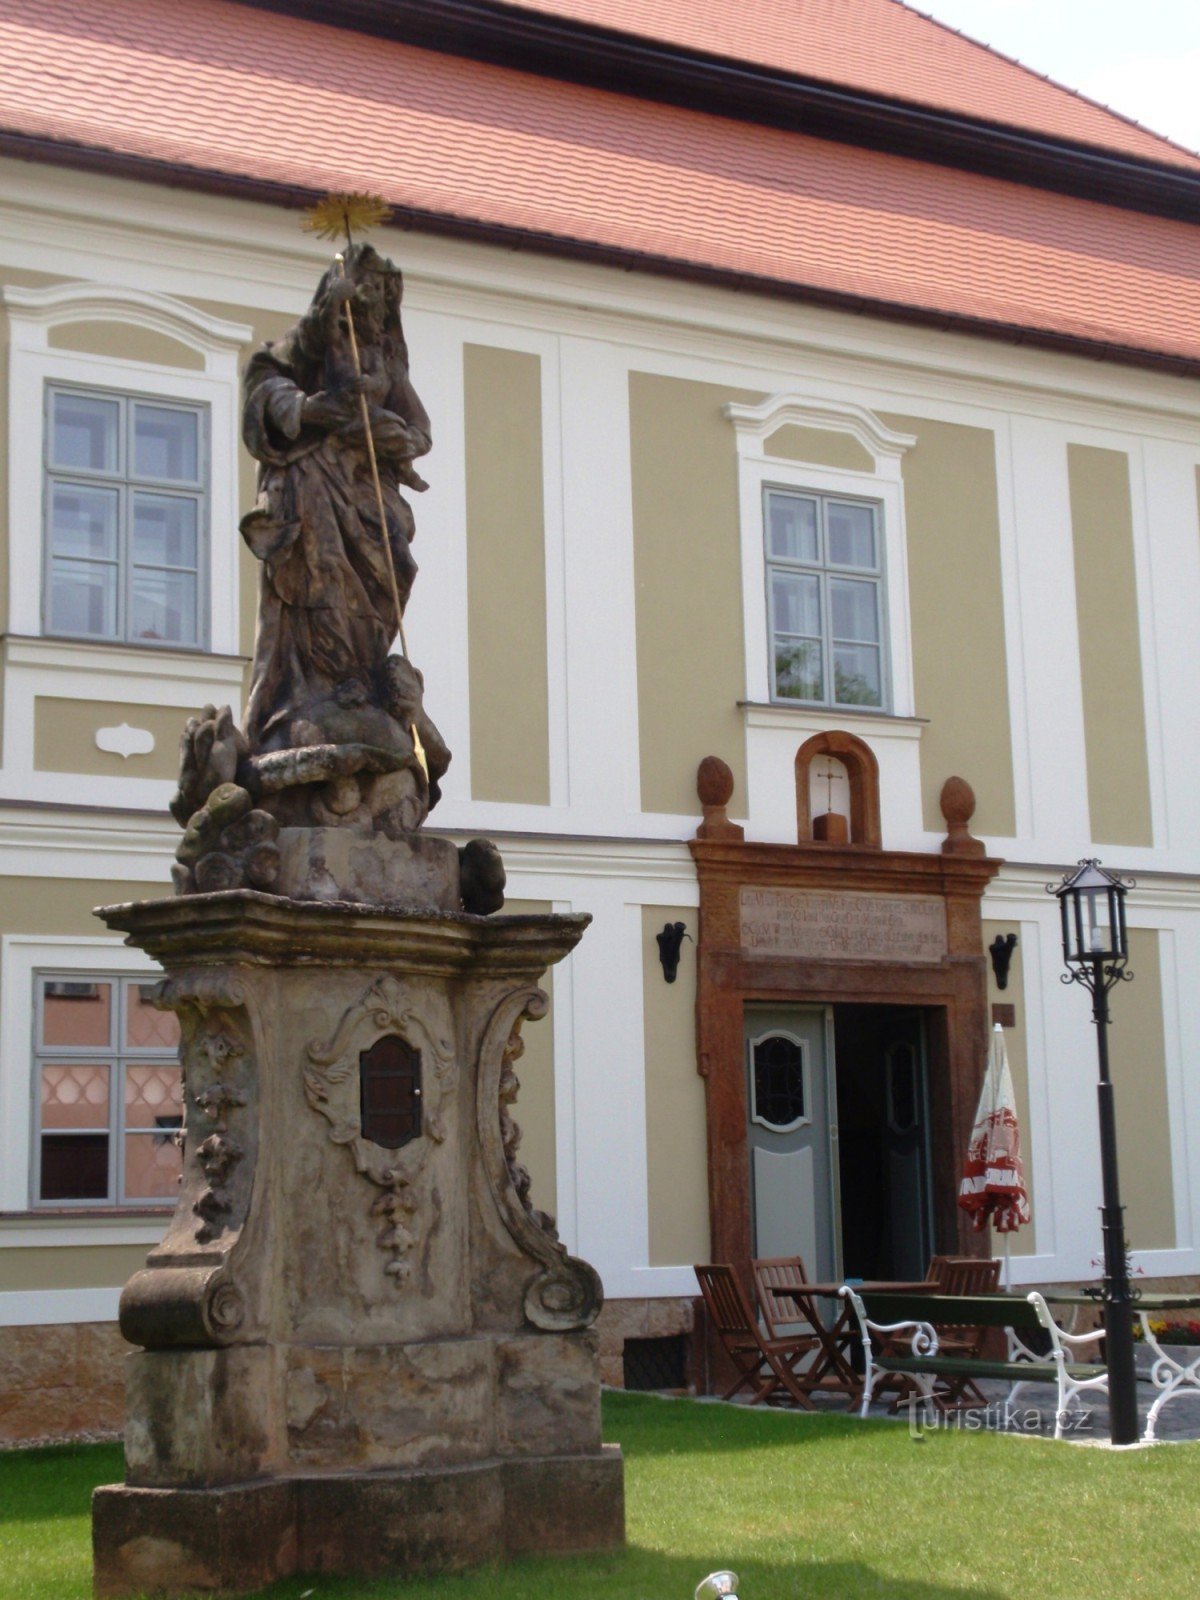 Statue der Jungfrau Maria in Křenov